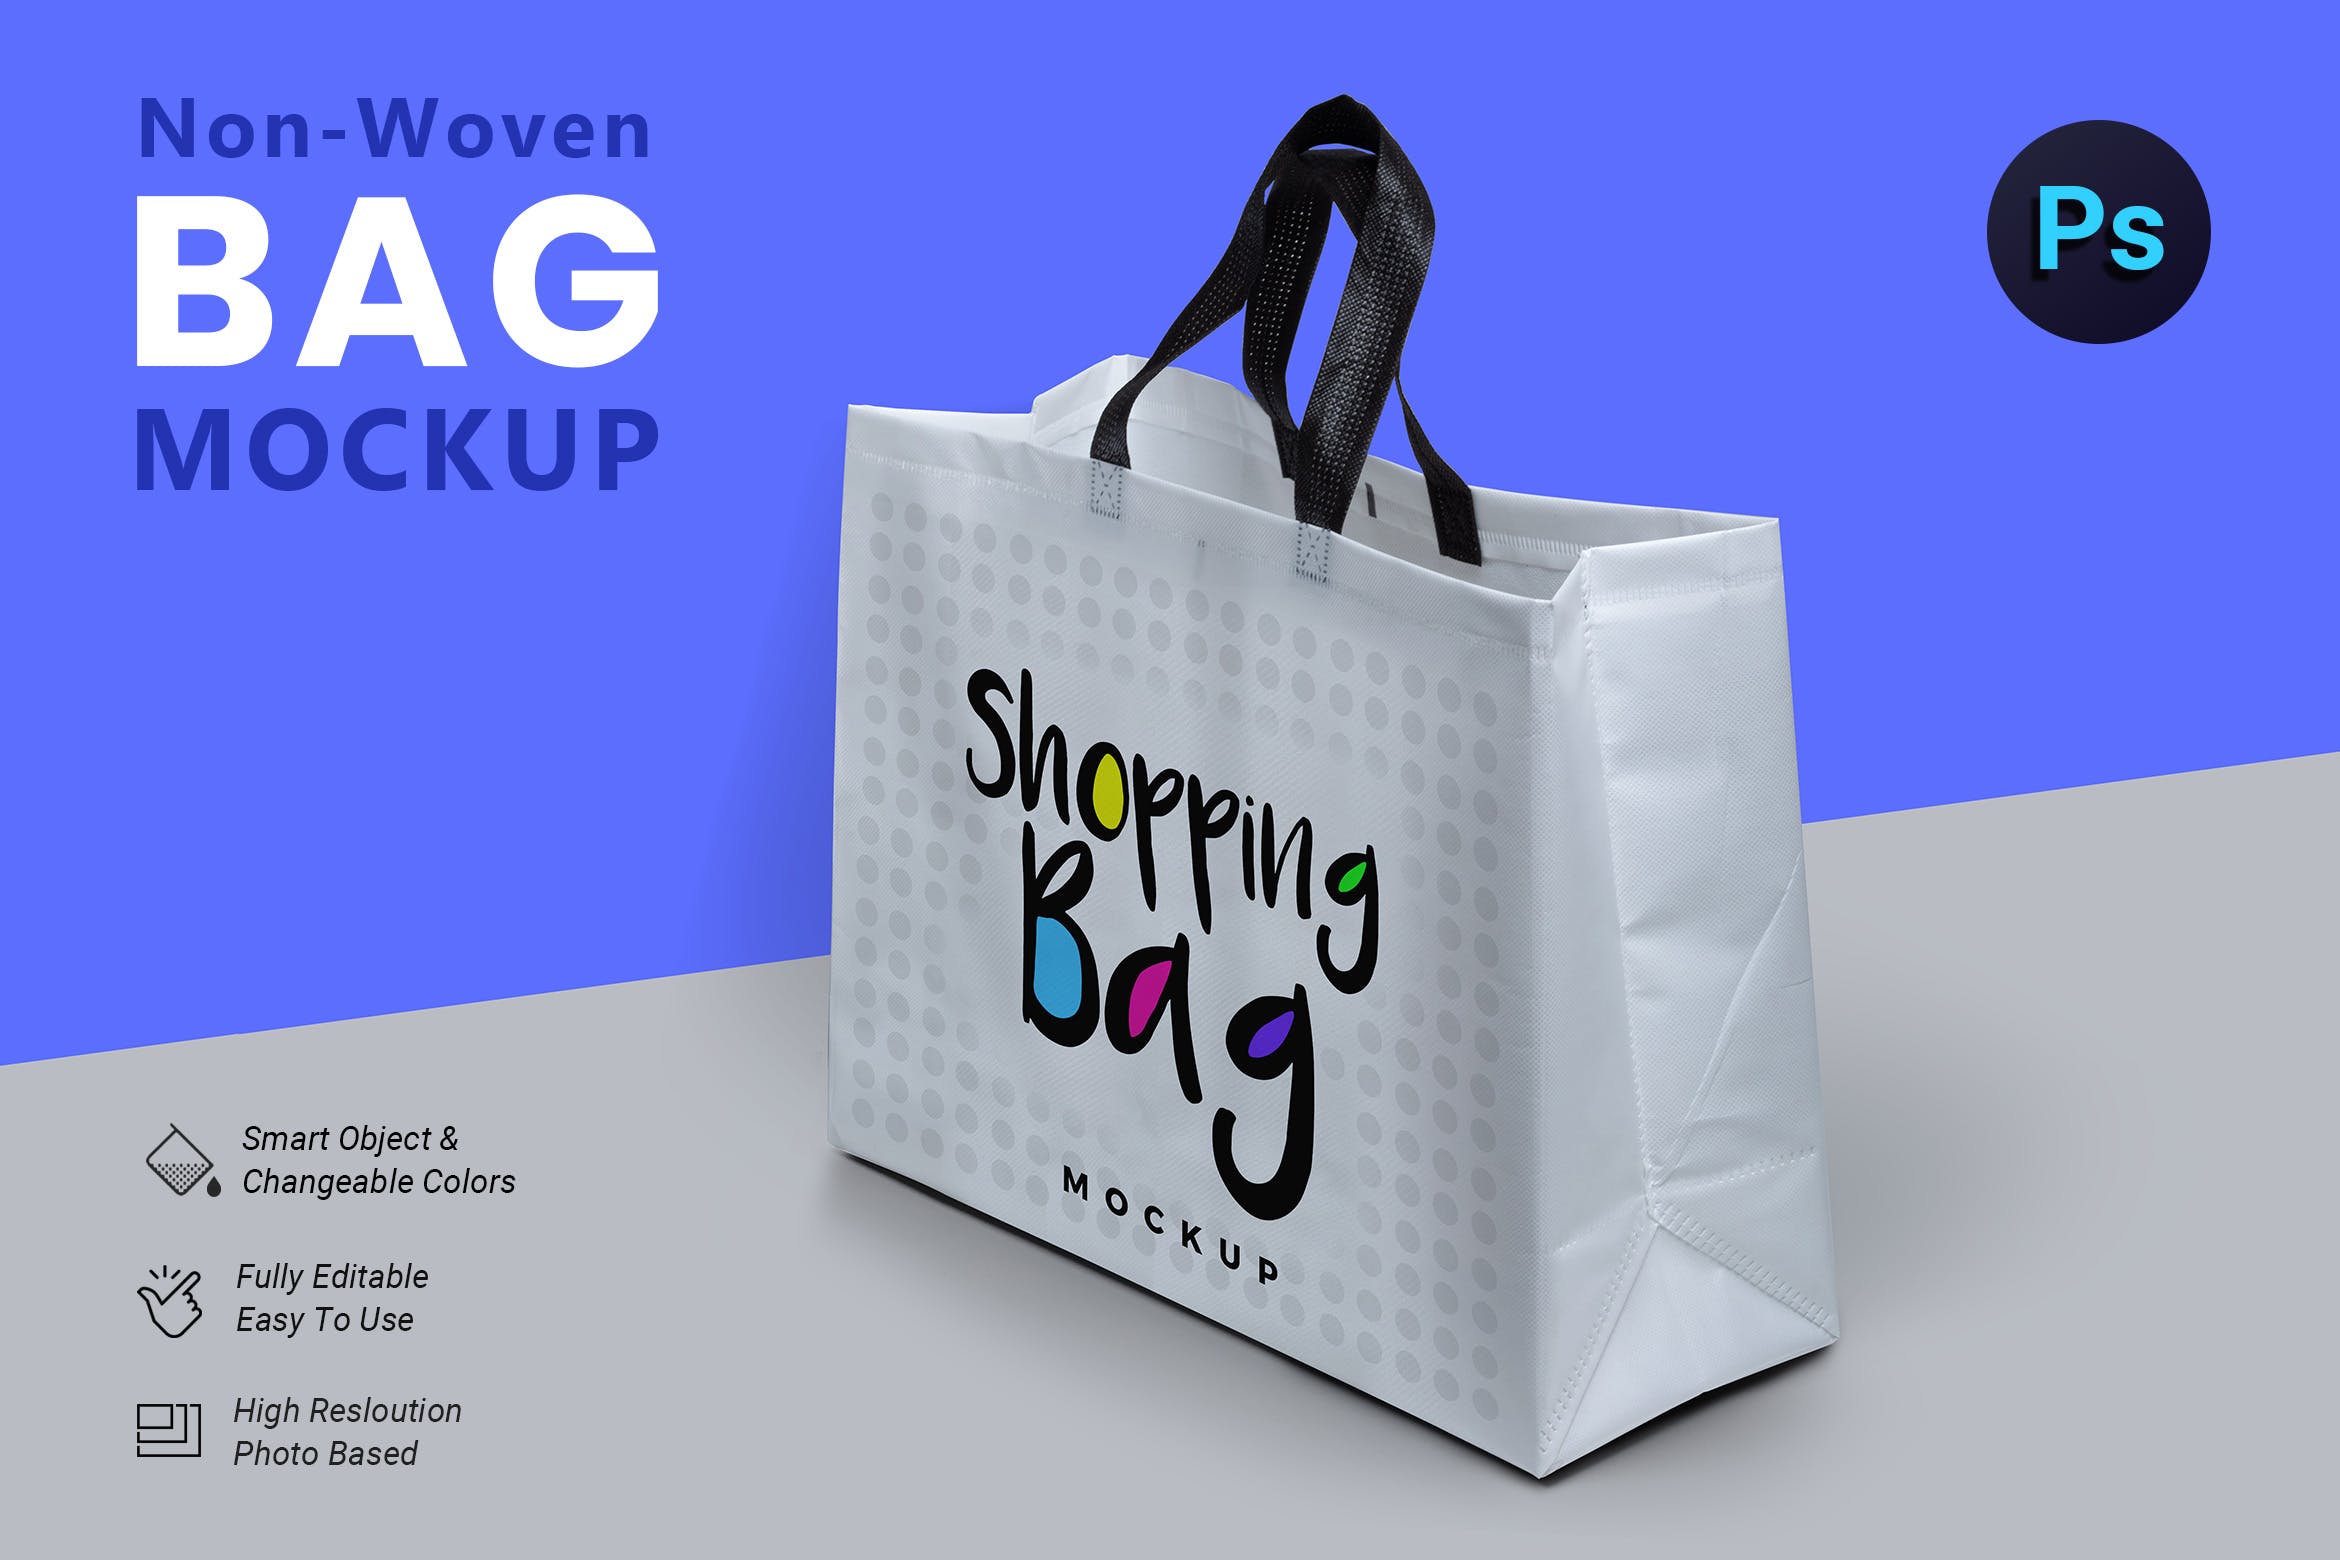 无纺布购物袋外观设计图16图库精选 Non Woven Bag Mockup插图